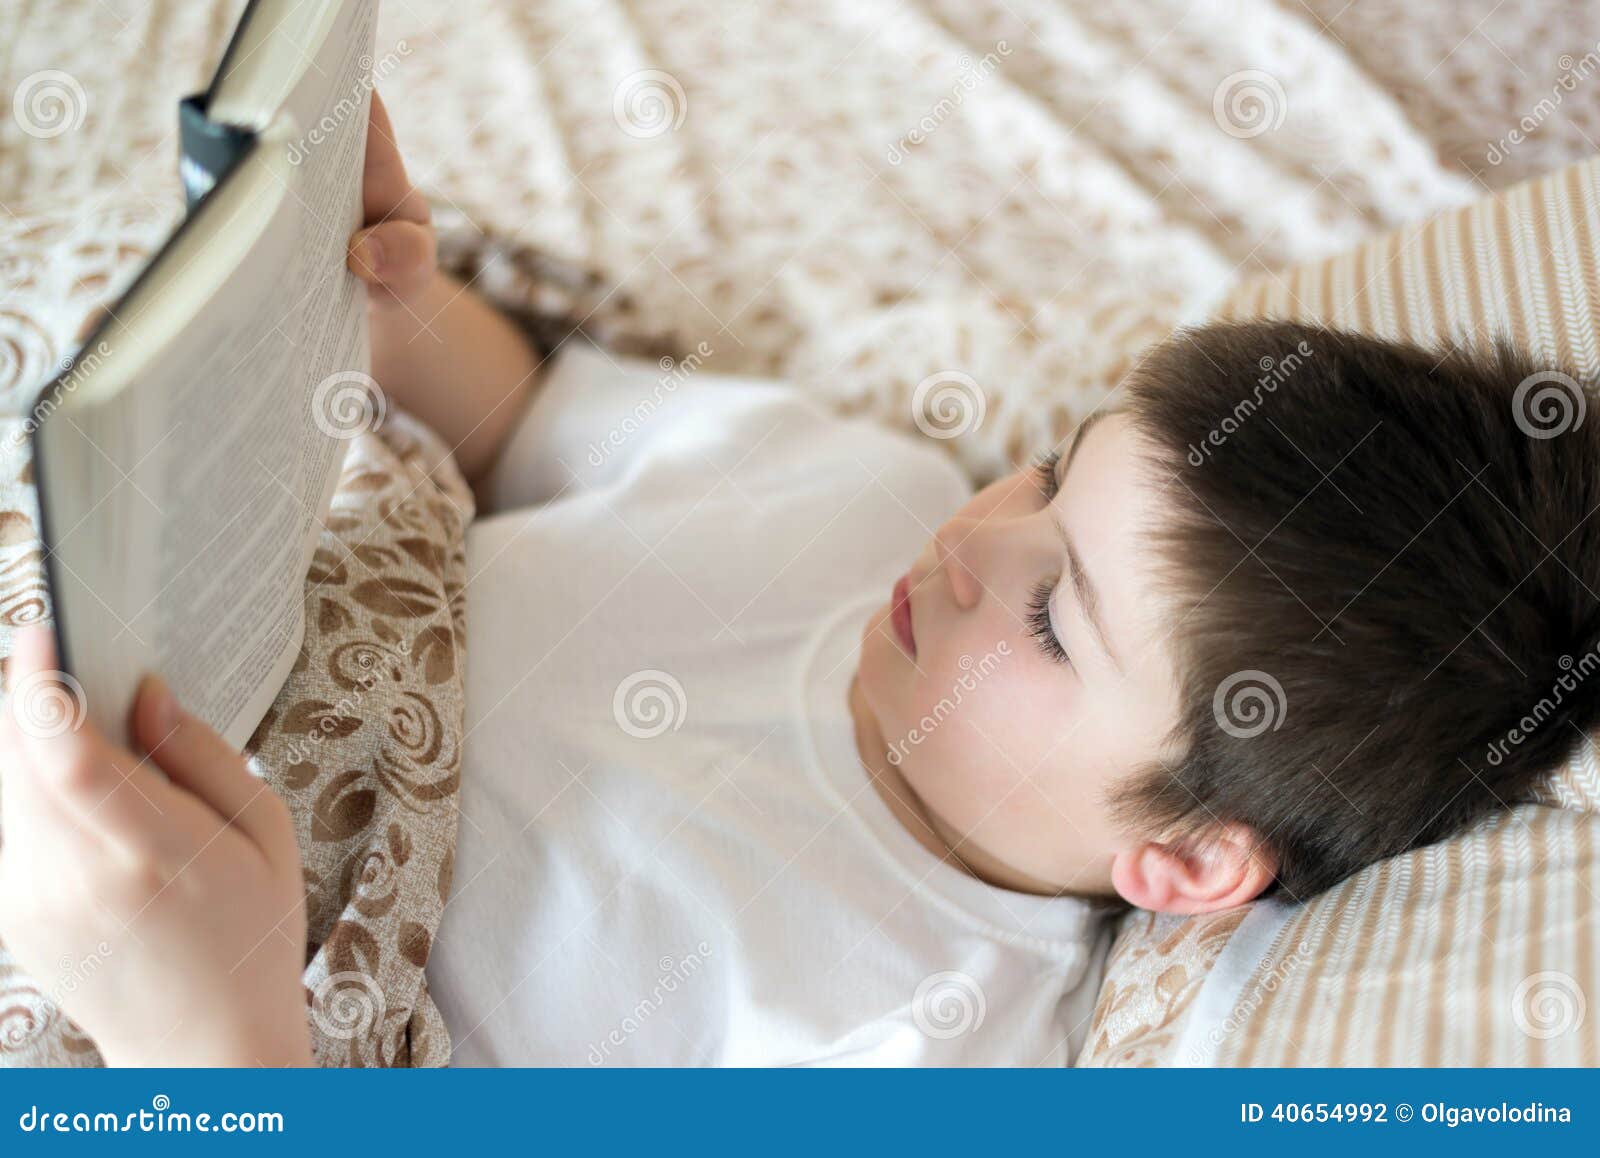 Читать лежа вредно лежа на горячем песке. Чтение мальчикам перед сном. Ребенок читает лежа. Ребенок читает книгу в постели. Мальчик в постели с книгой.